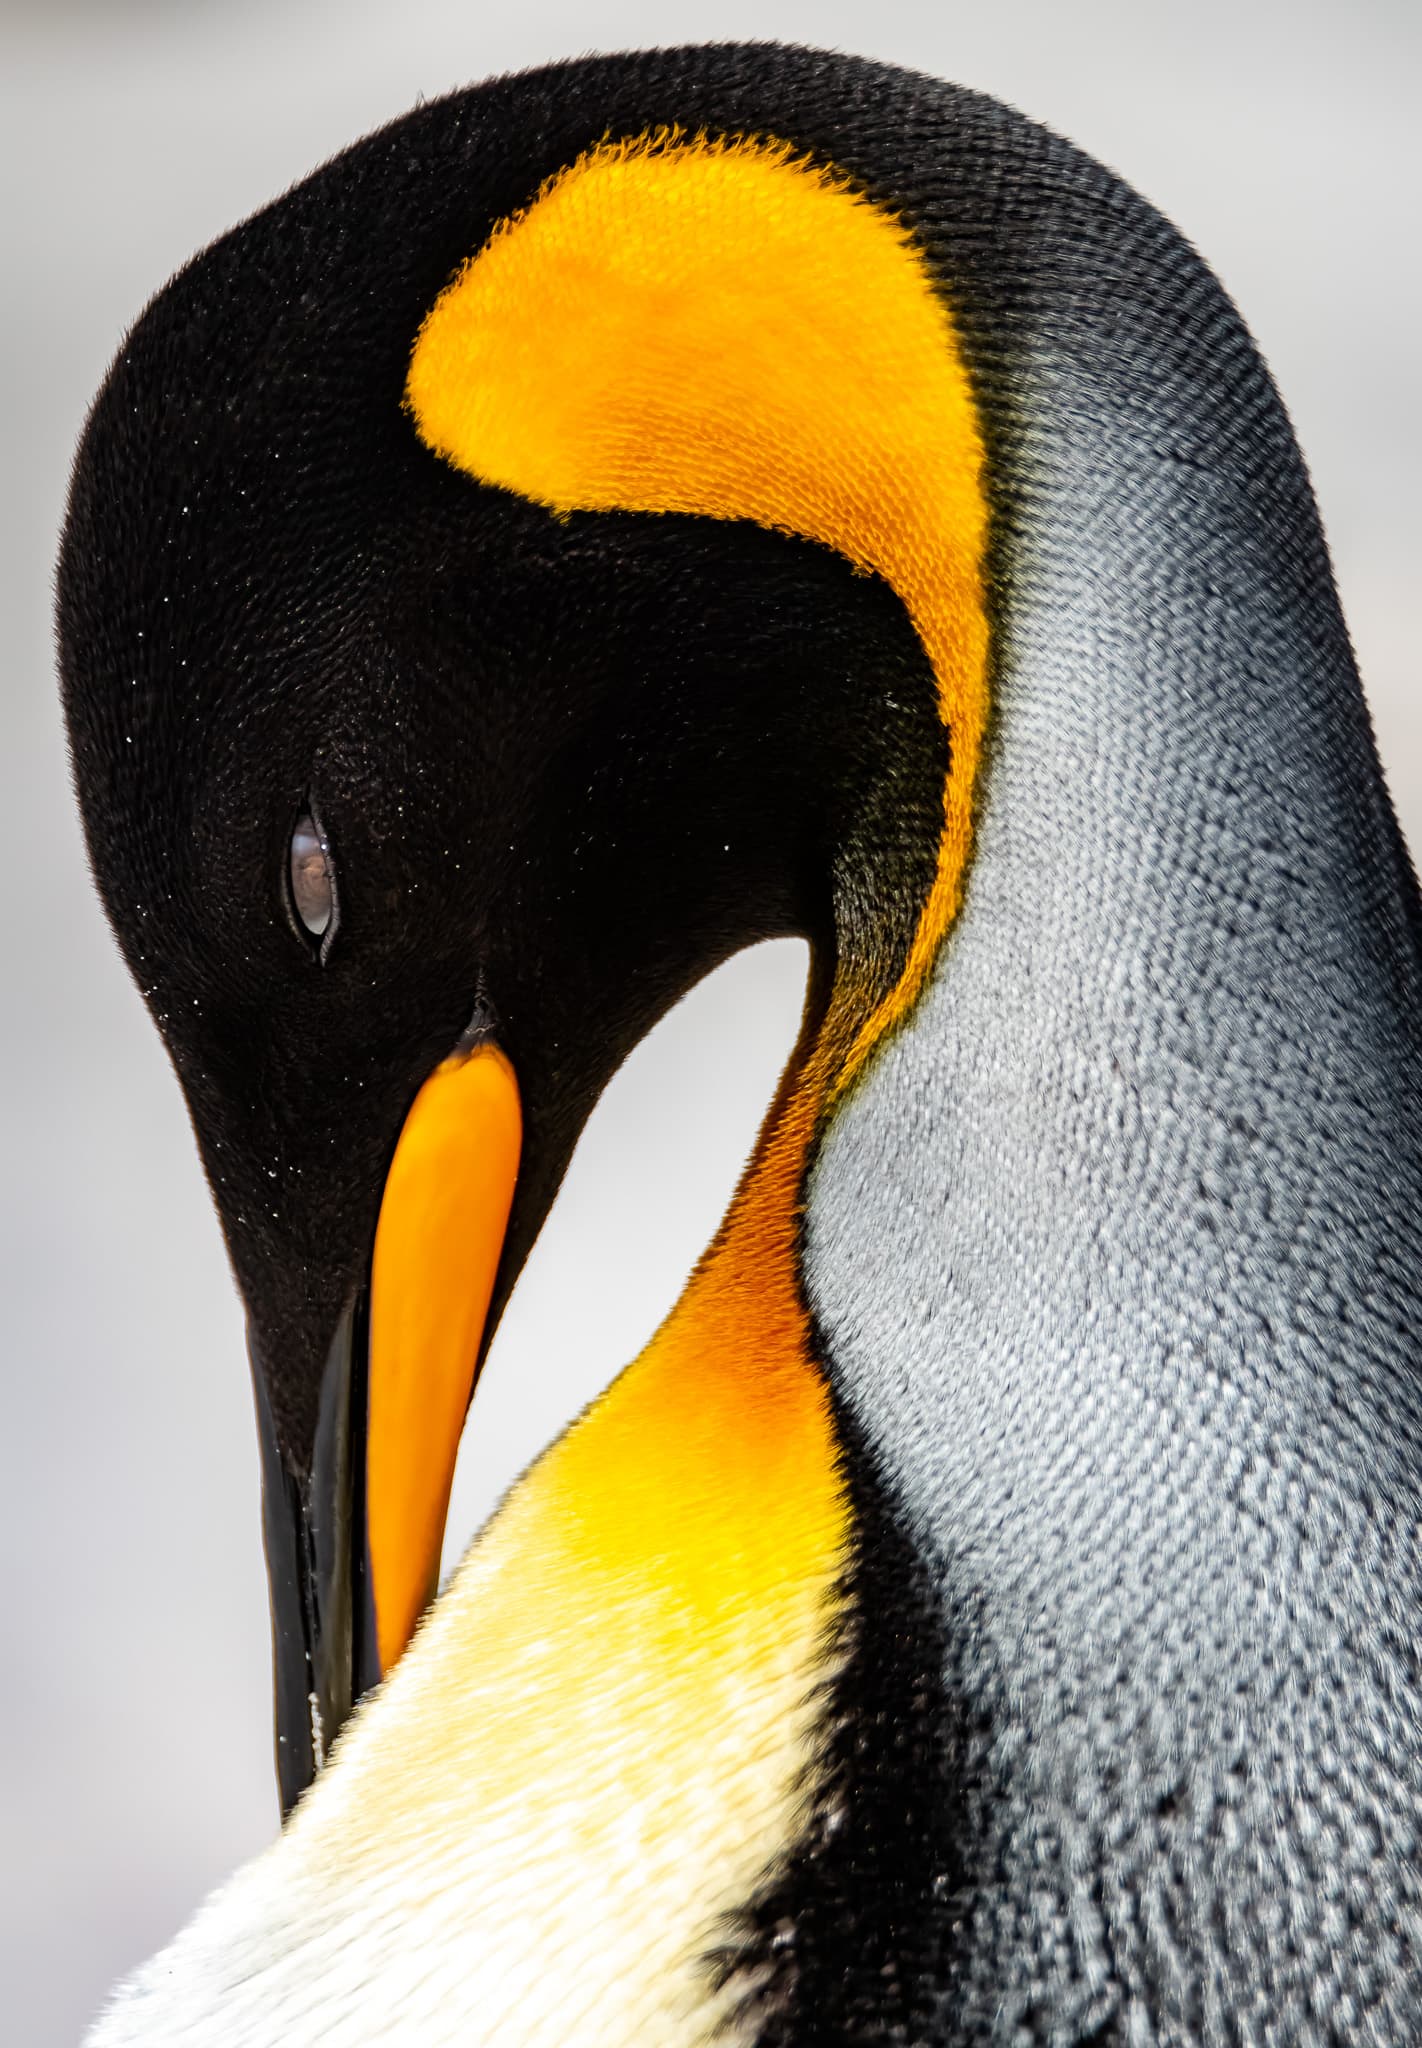 King penguin portrait